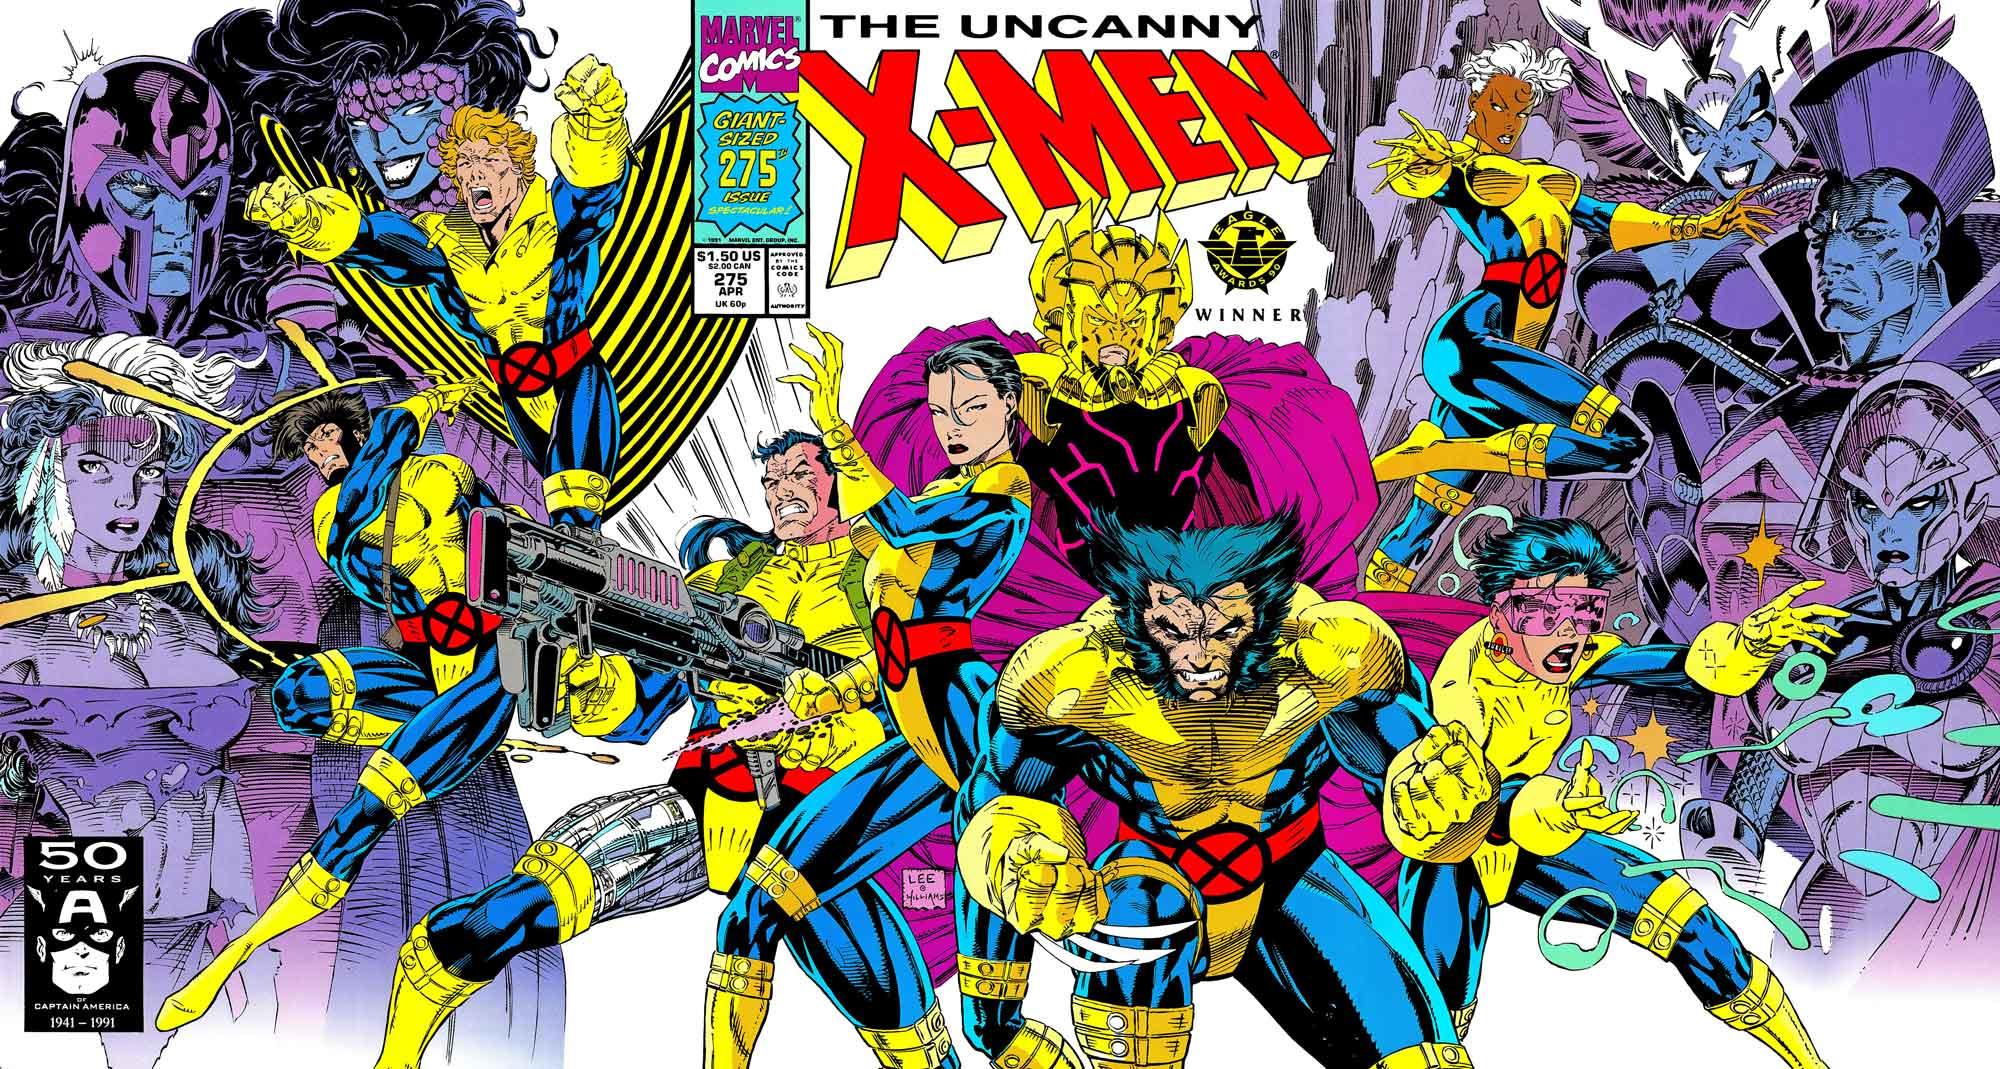 Portada de The Uncanny X-Men número 275, por Jim Lee